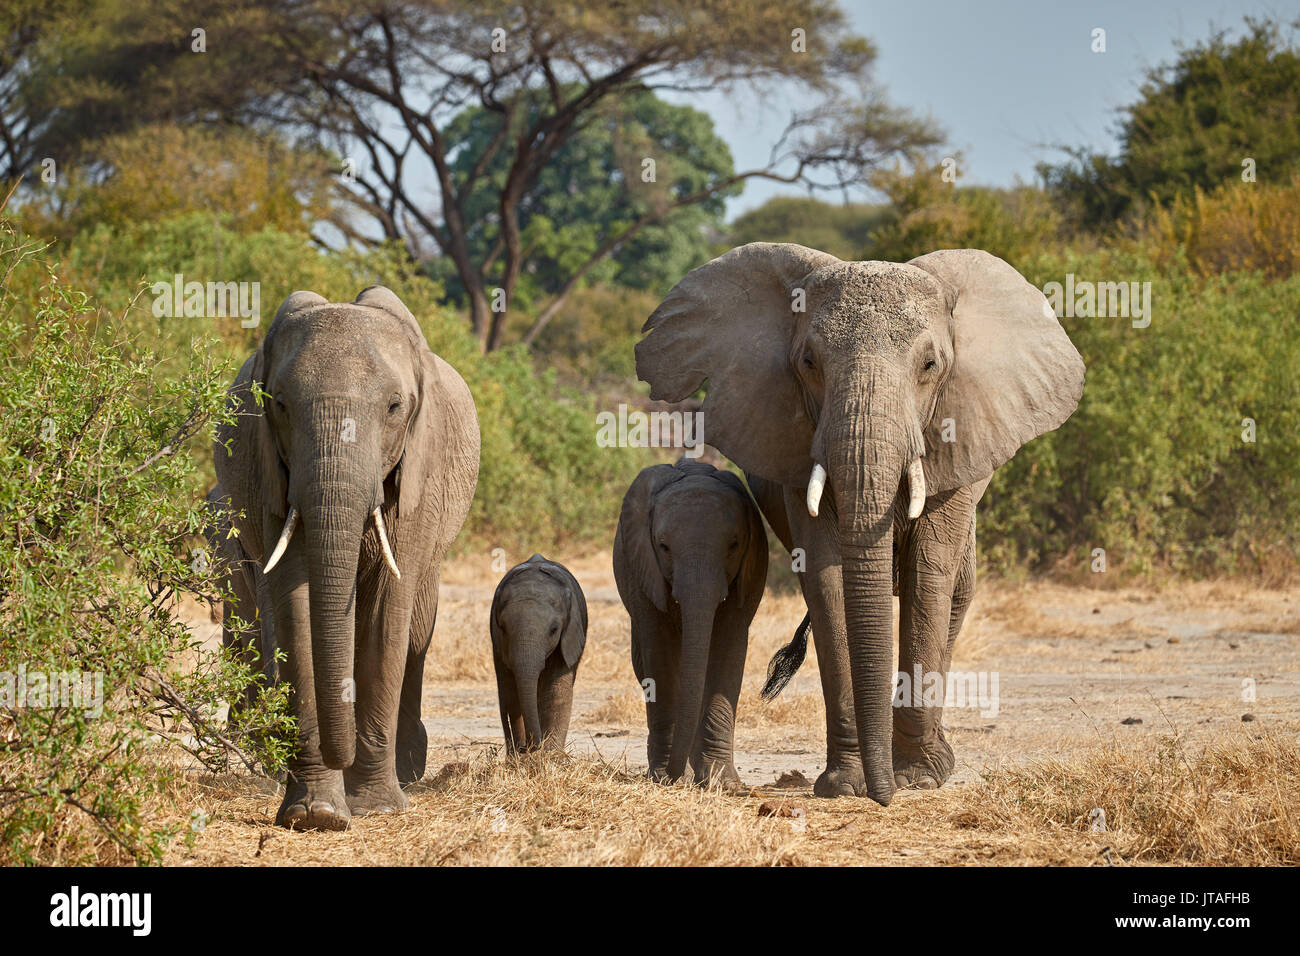 Elefante africano (Loxodonta africana), el Parque nacional Ruaha, Tanzania, África oriental, África Foto de stock